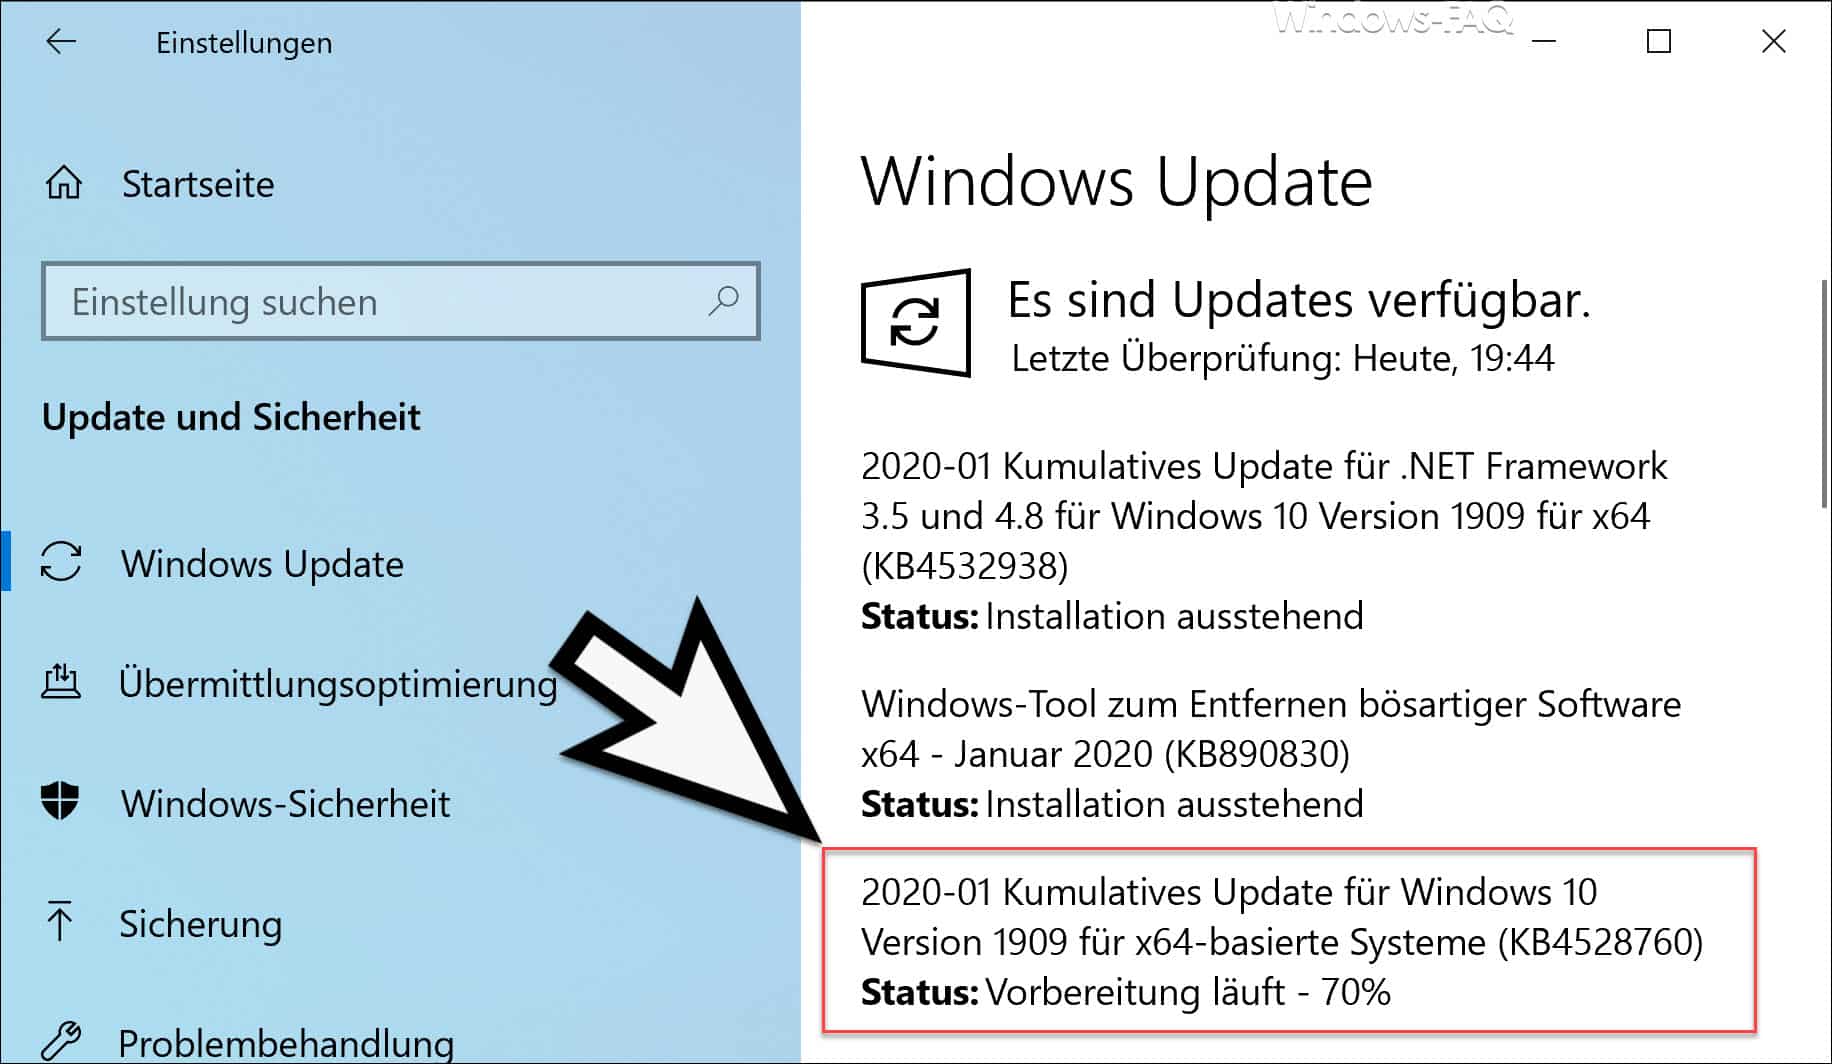 Download KB4528760 für Windows 10 Version 1903 und 1909 (18362.592 und 18363.592)